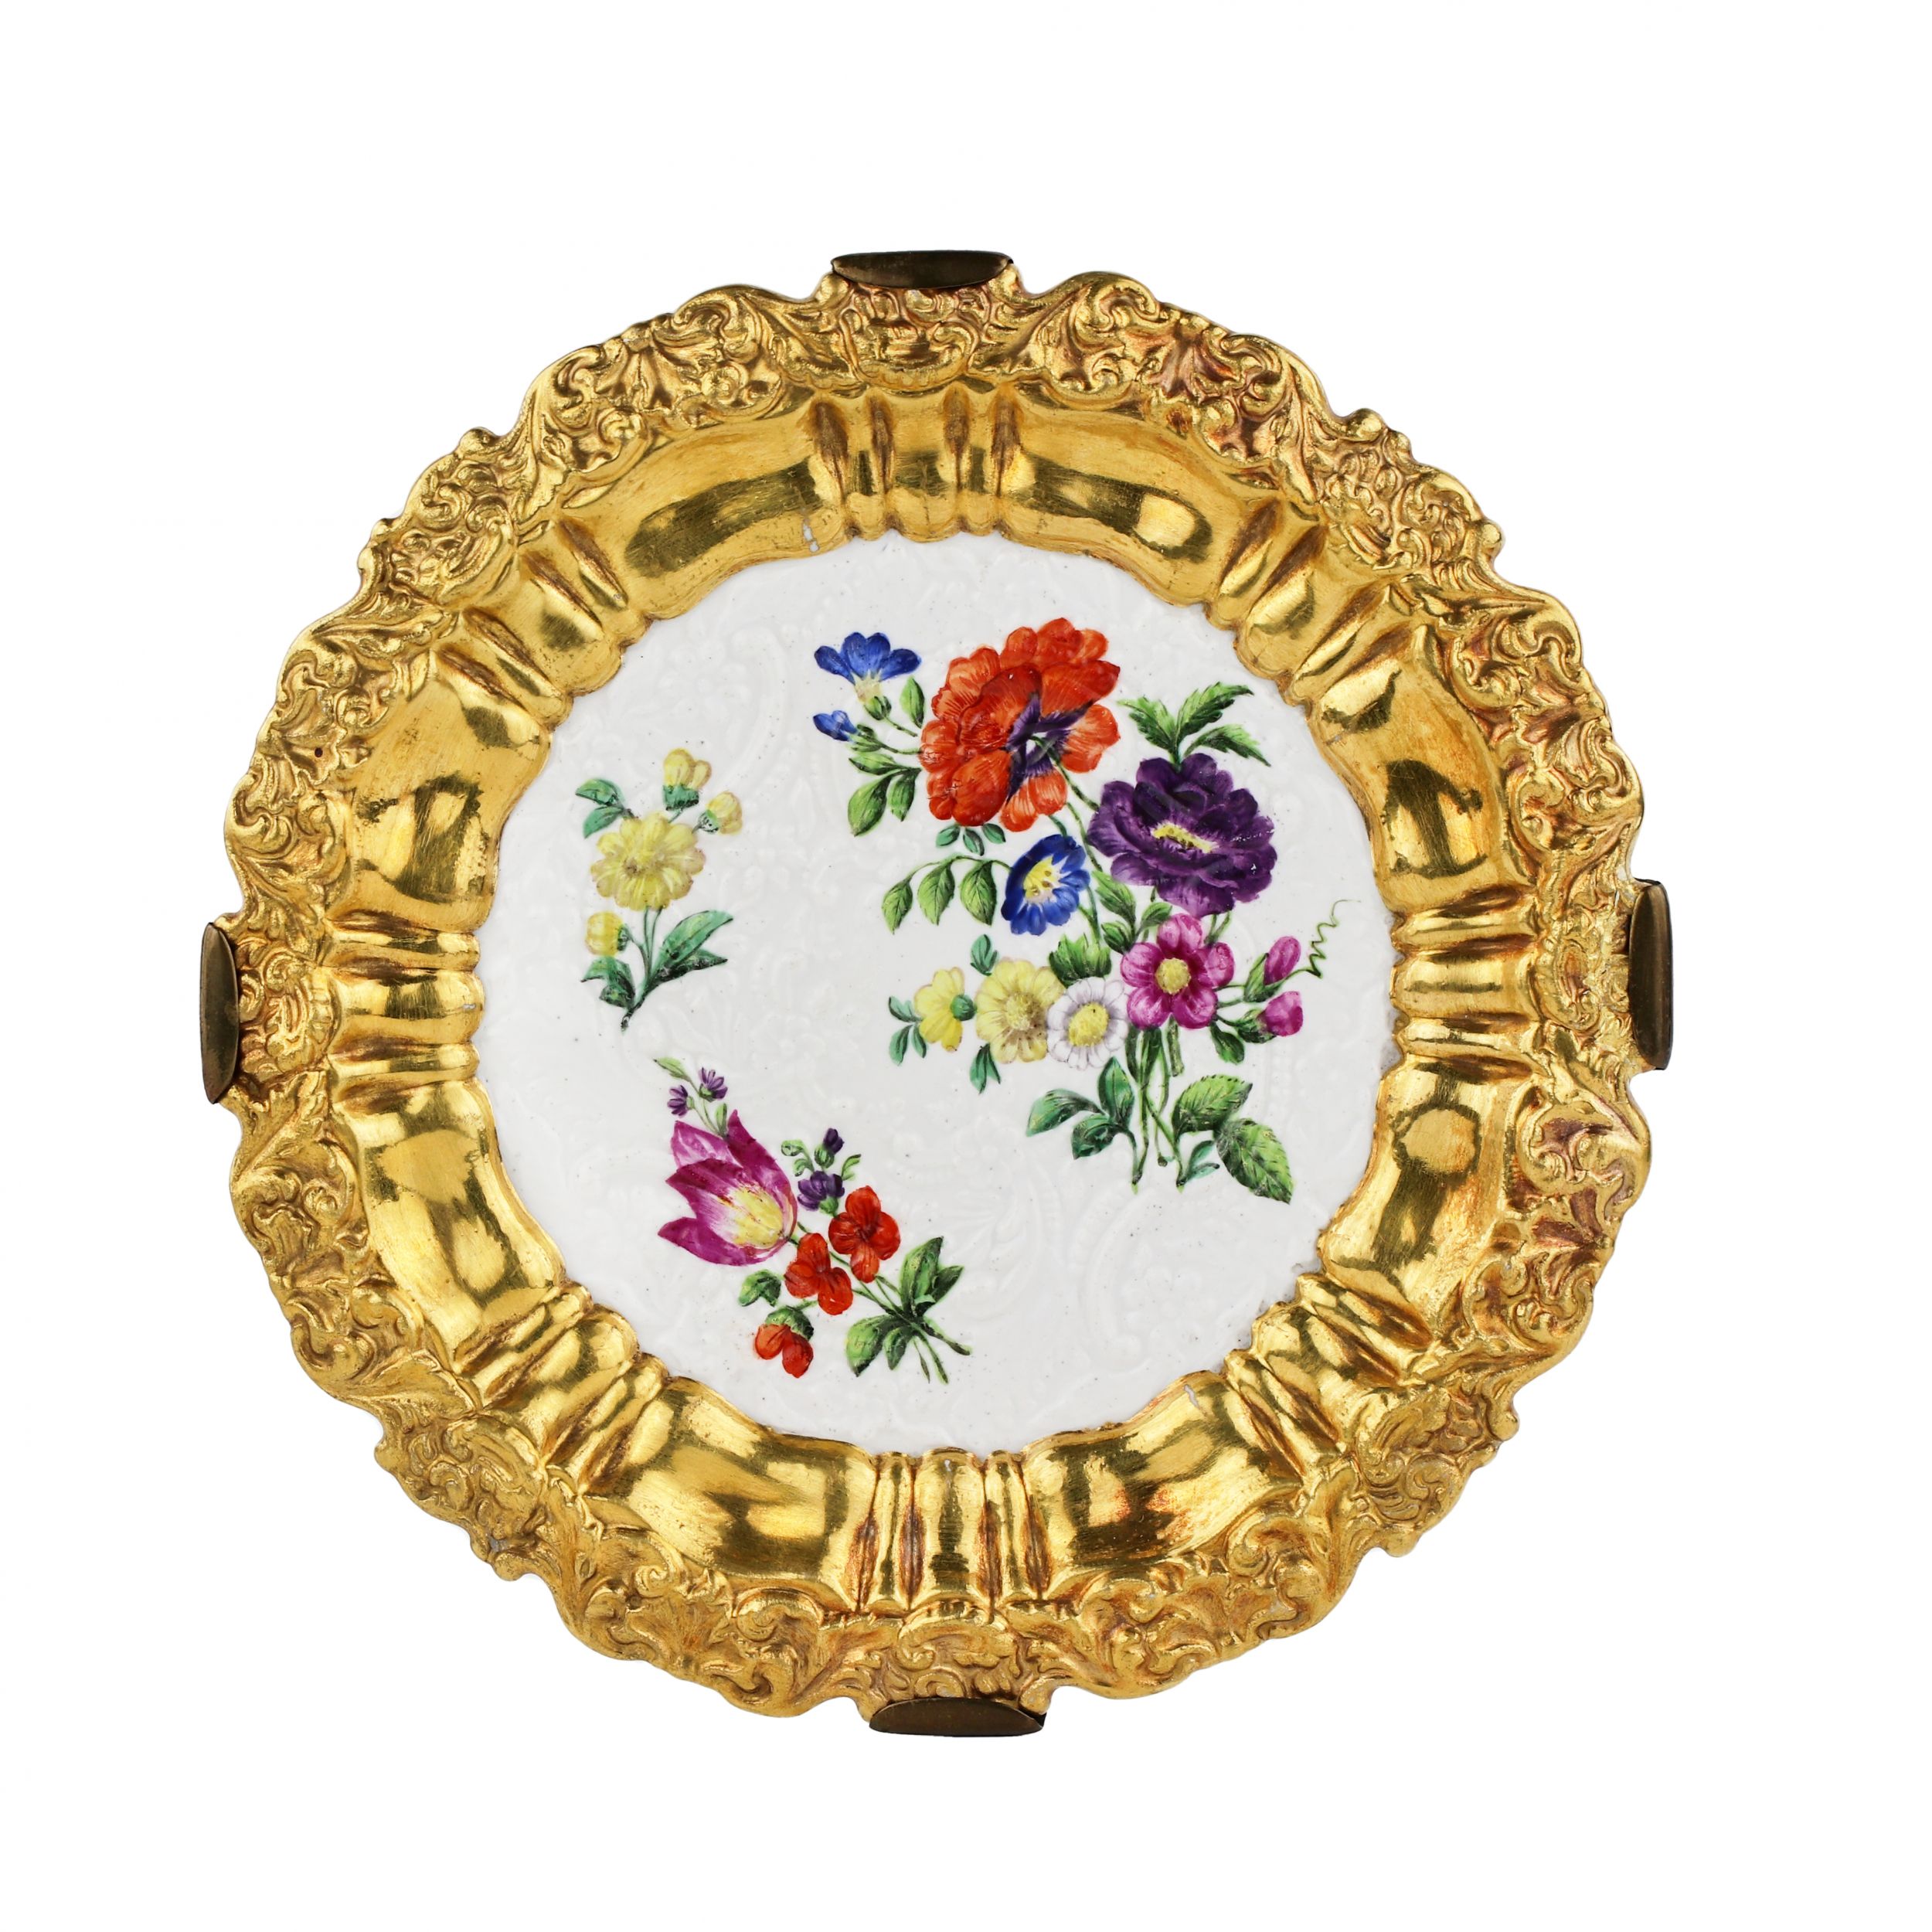 Porte-assiettes-décoratif-en-porcelaine-Manufacture-impériale-de-porcelaine-1825-1855-